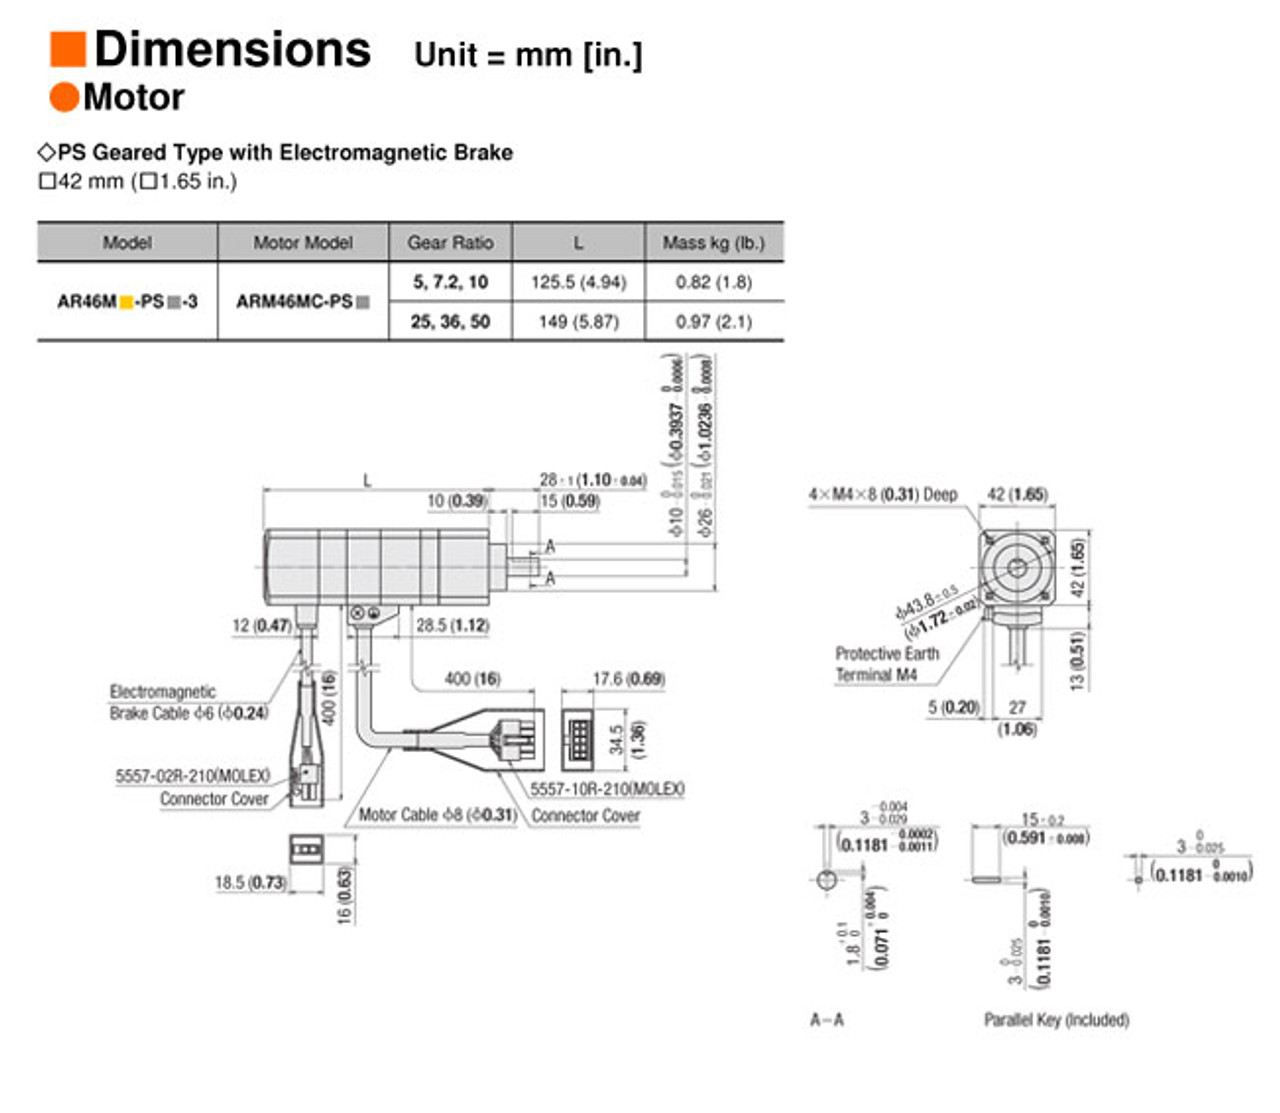 ARM46MC-PS25 - Dimensions